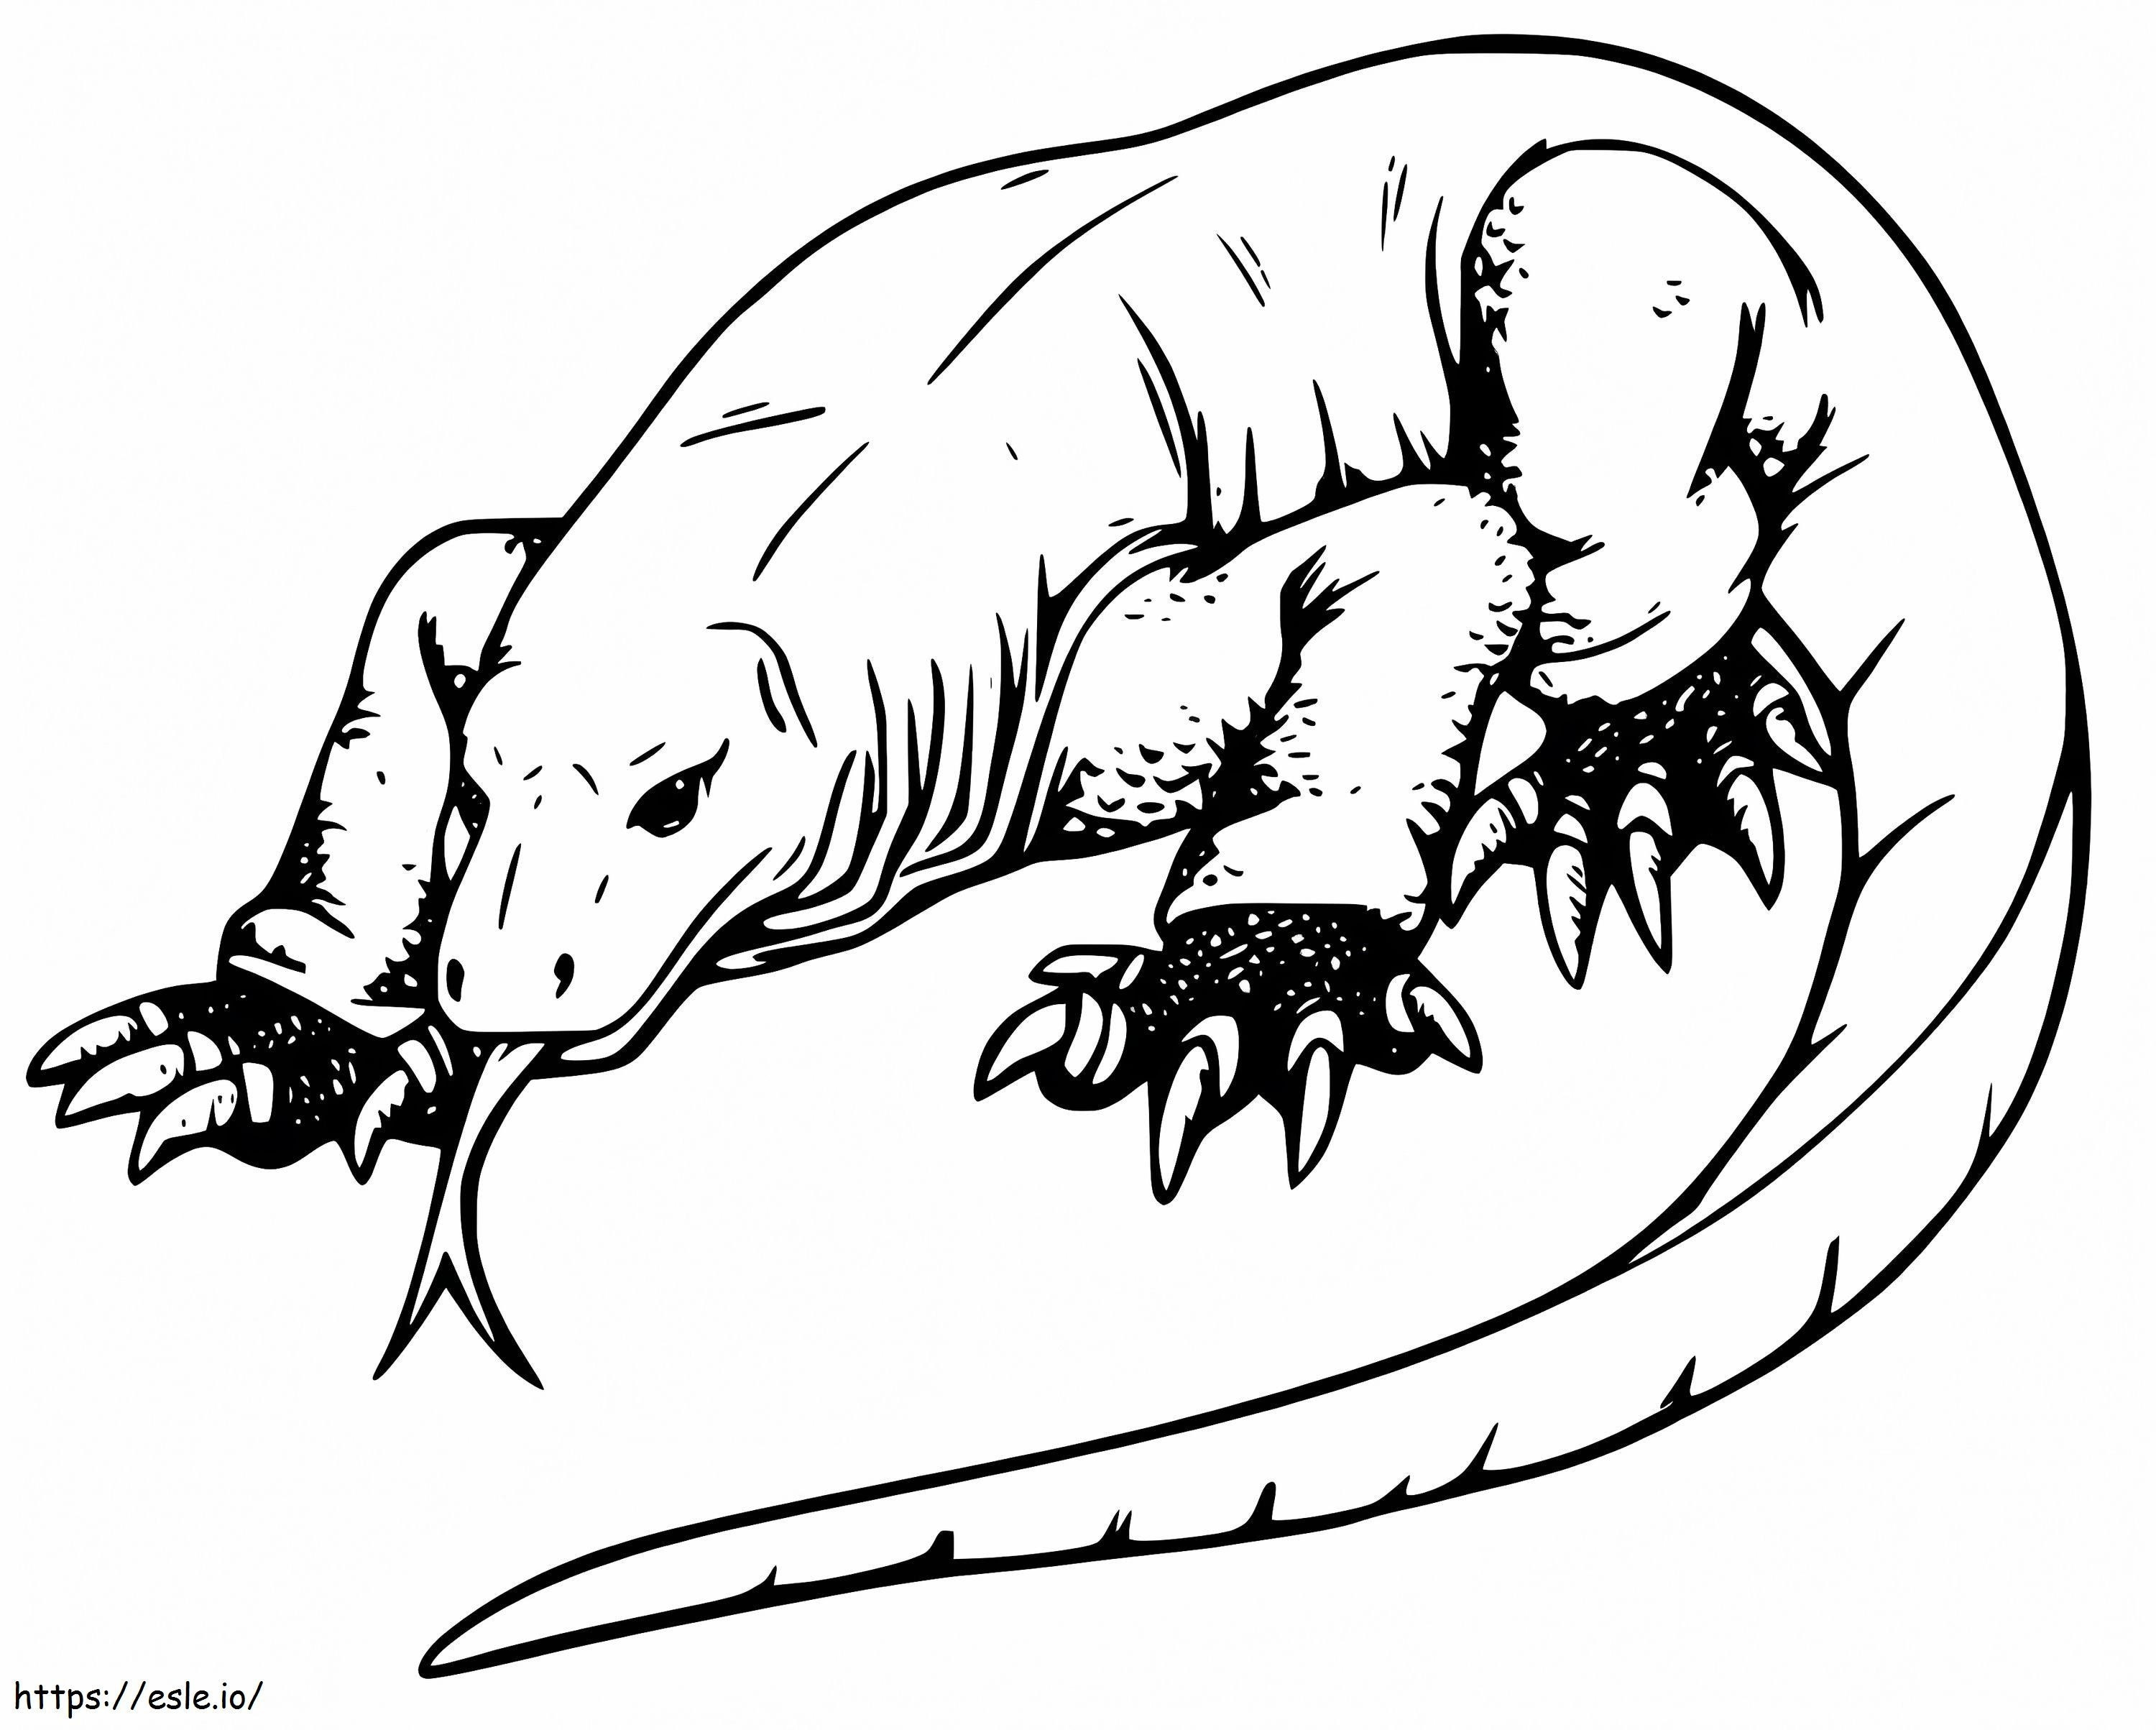 Coloriage Dragon géant de Komodo à imprimer dessin